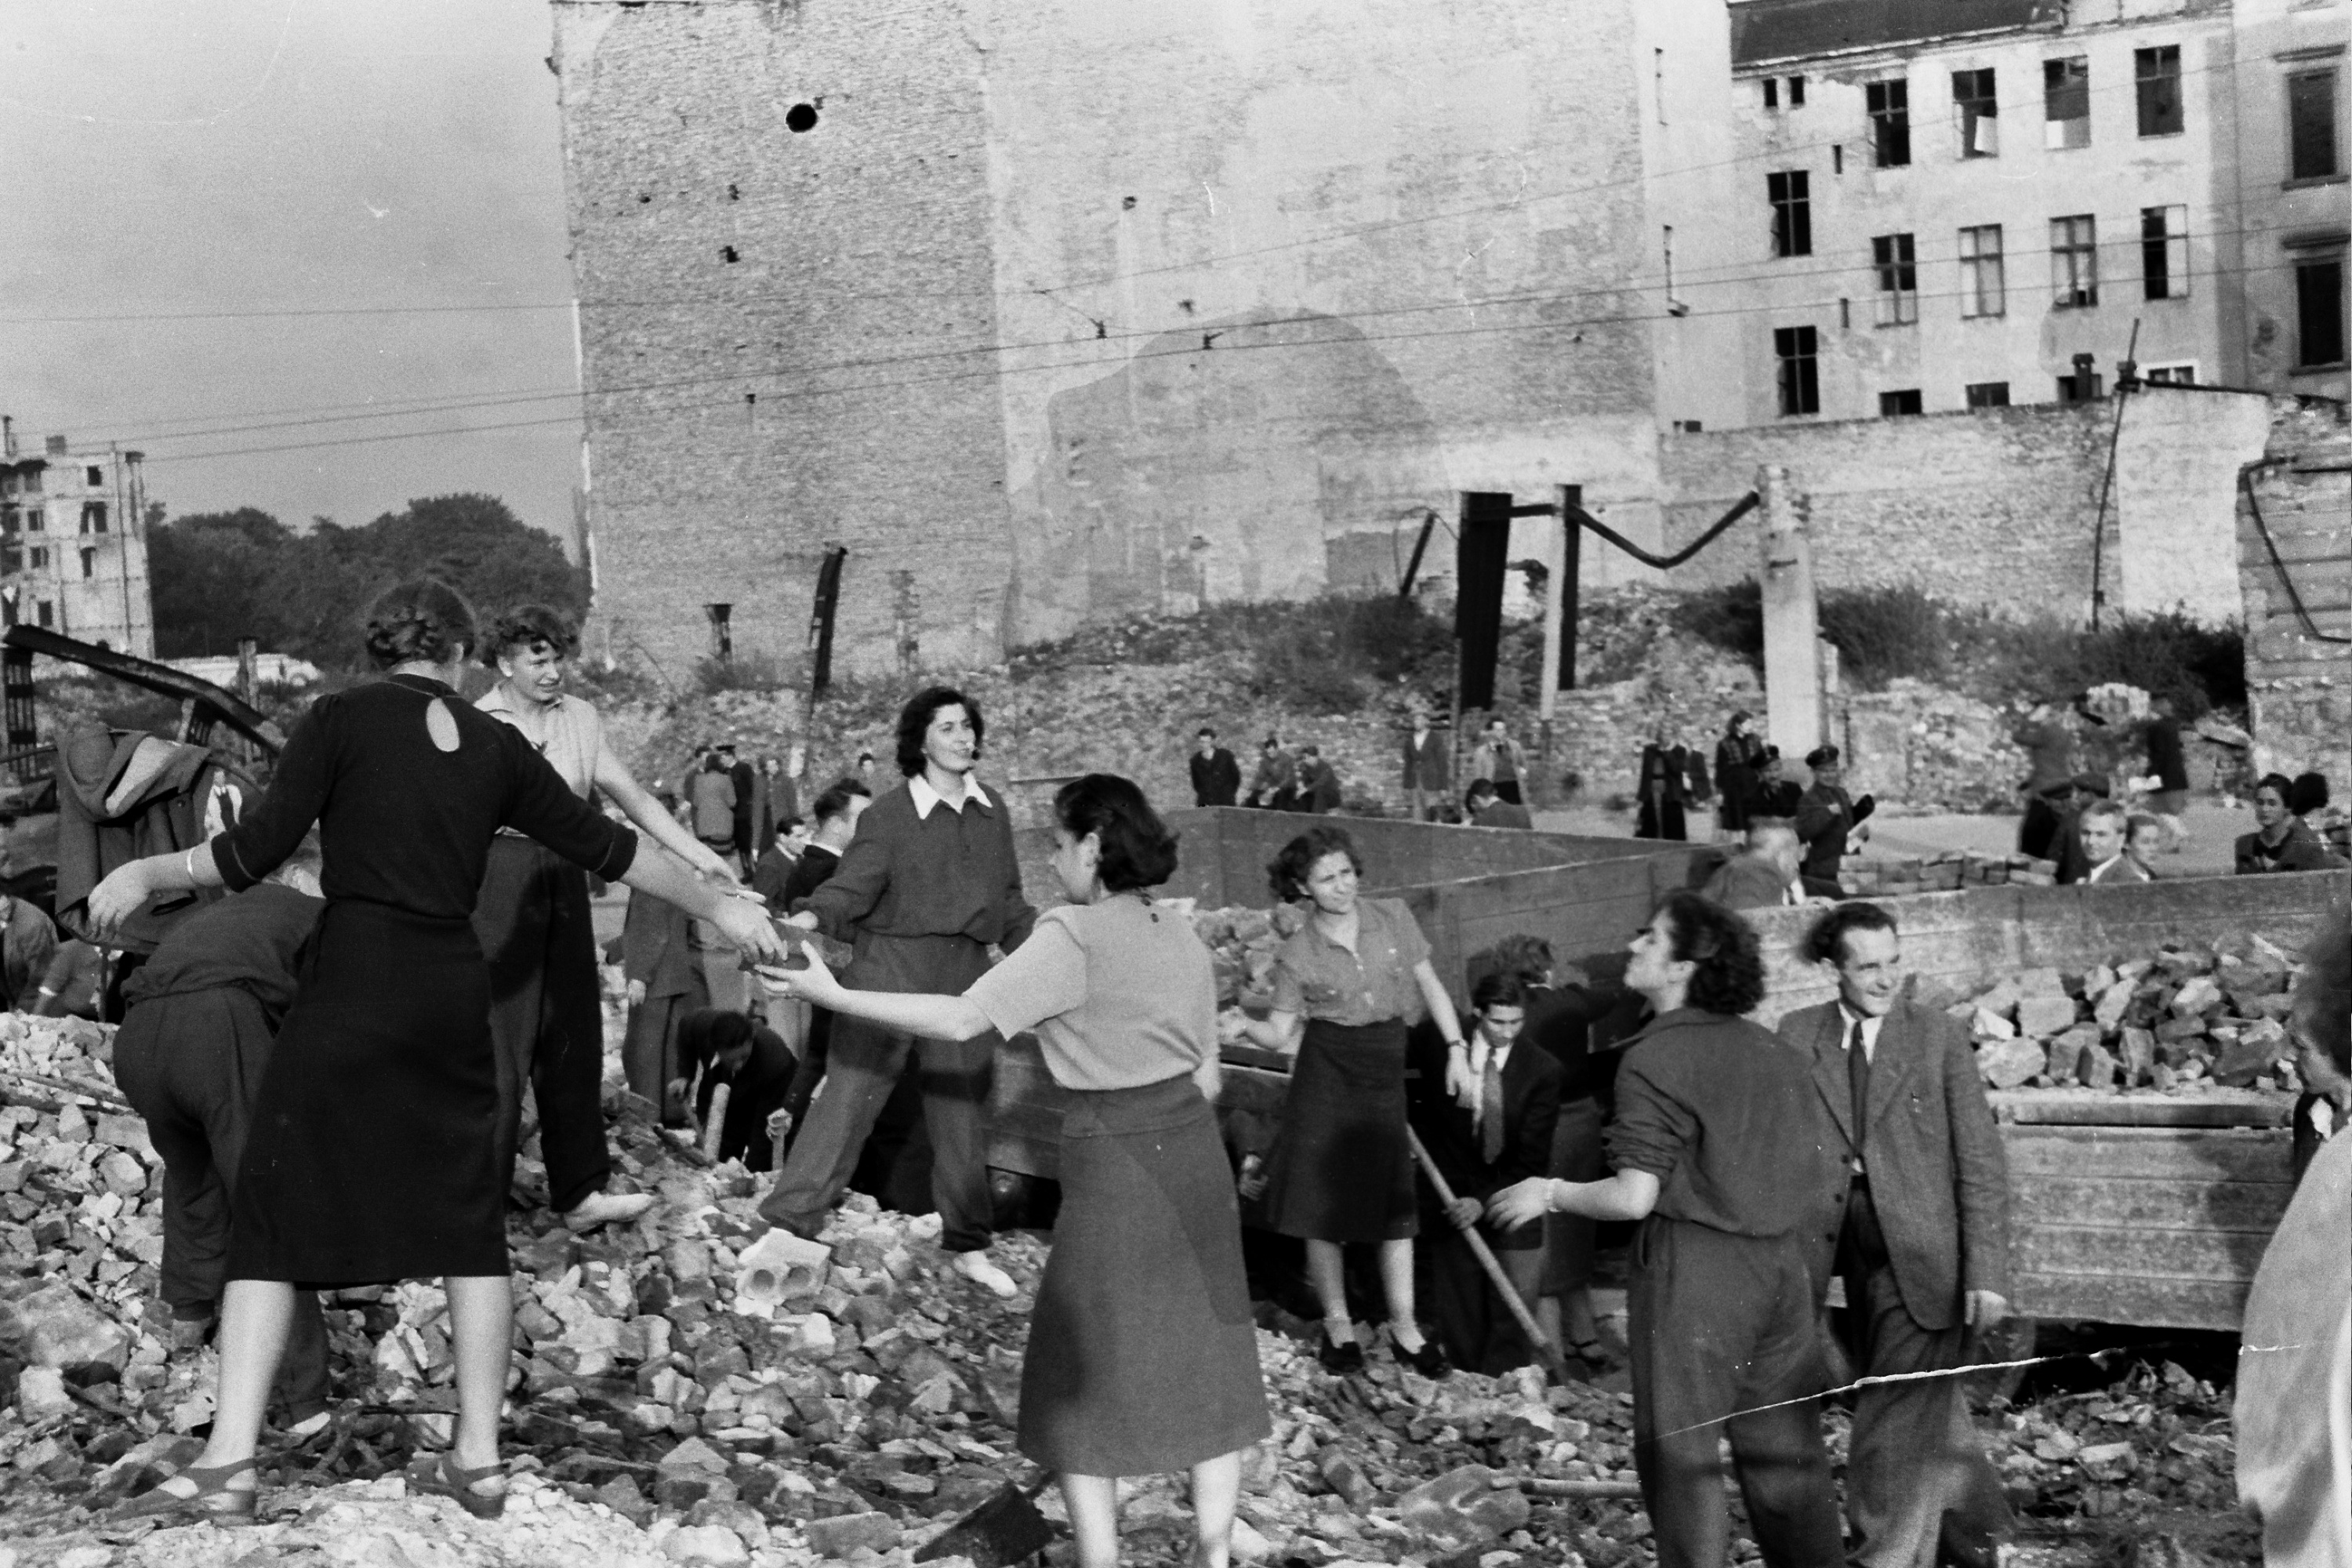 Die Beseitigung von Schutt rund um den Königsplatz/ Plac Żołnierza Polskiego hat die junge Fotografin Krystyna Łyczywek nach dem Krieg dokumentiert. © Archiv Krystyna Łyczywek